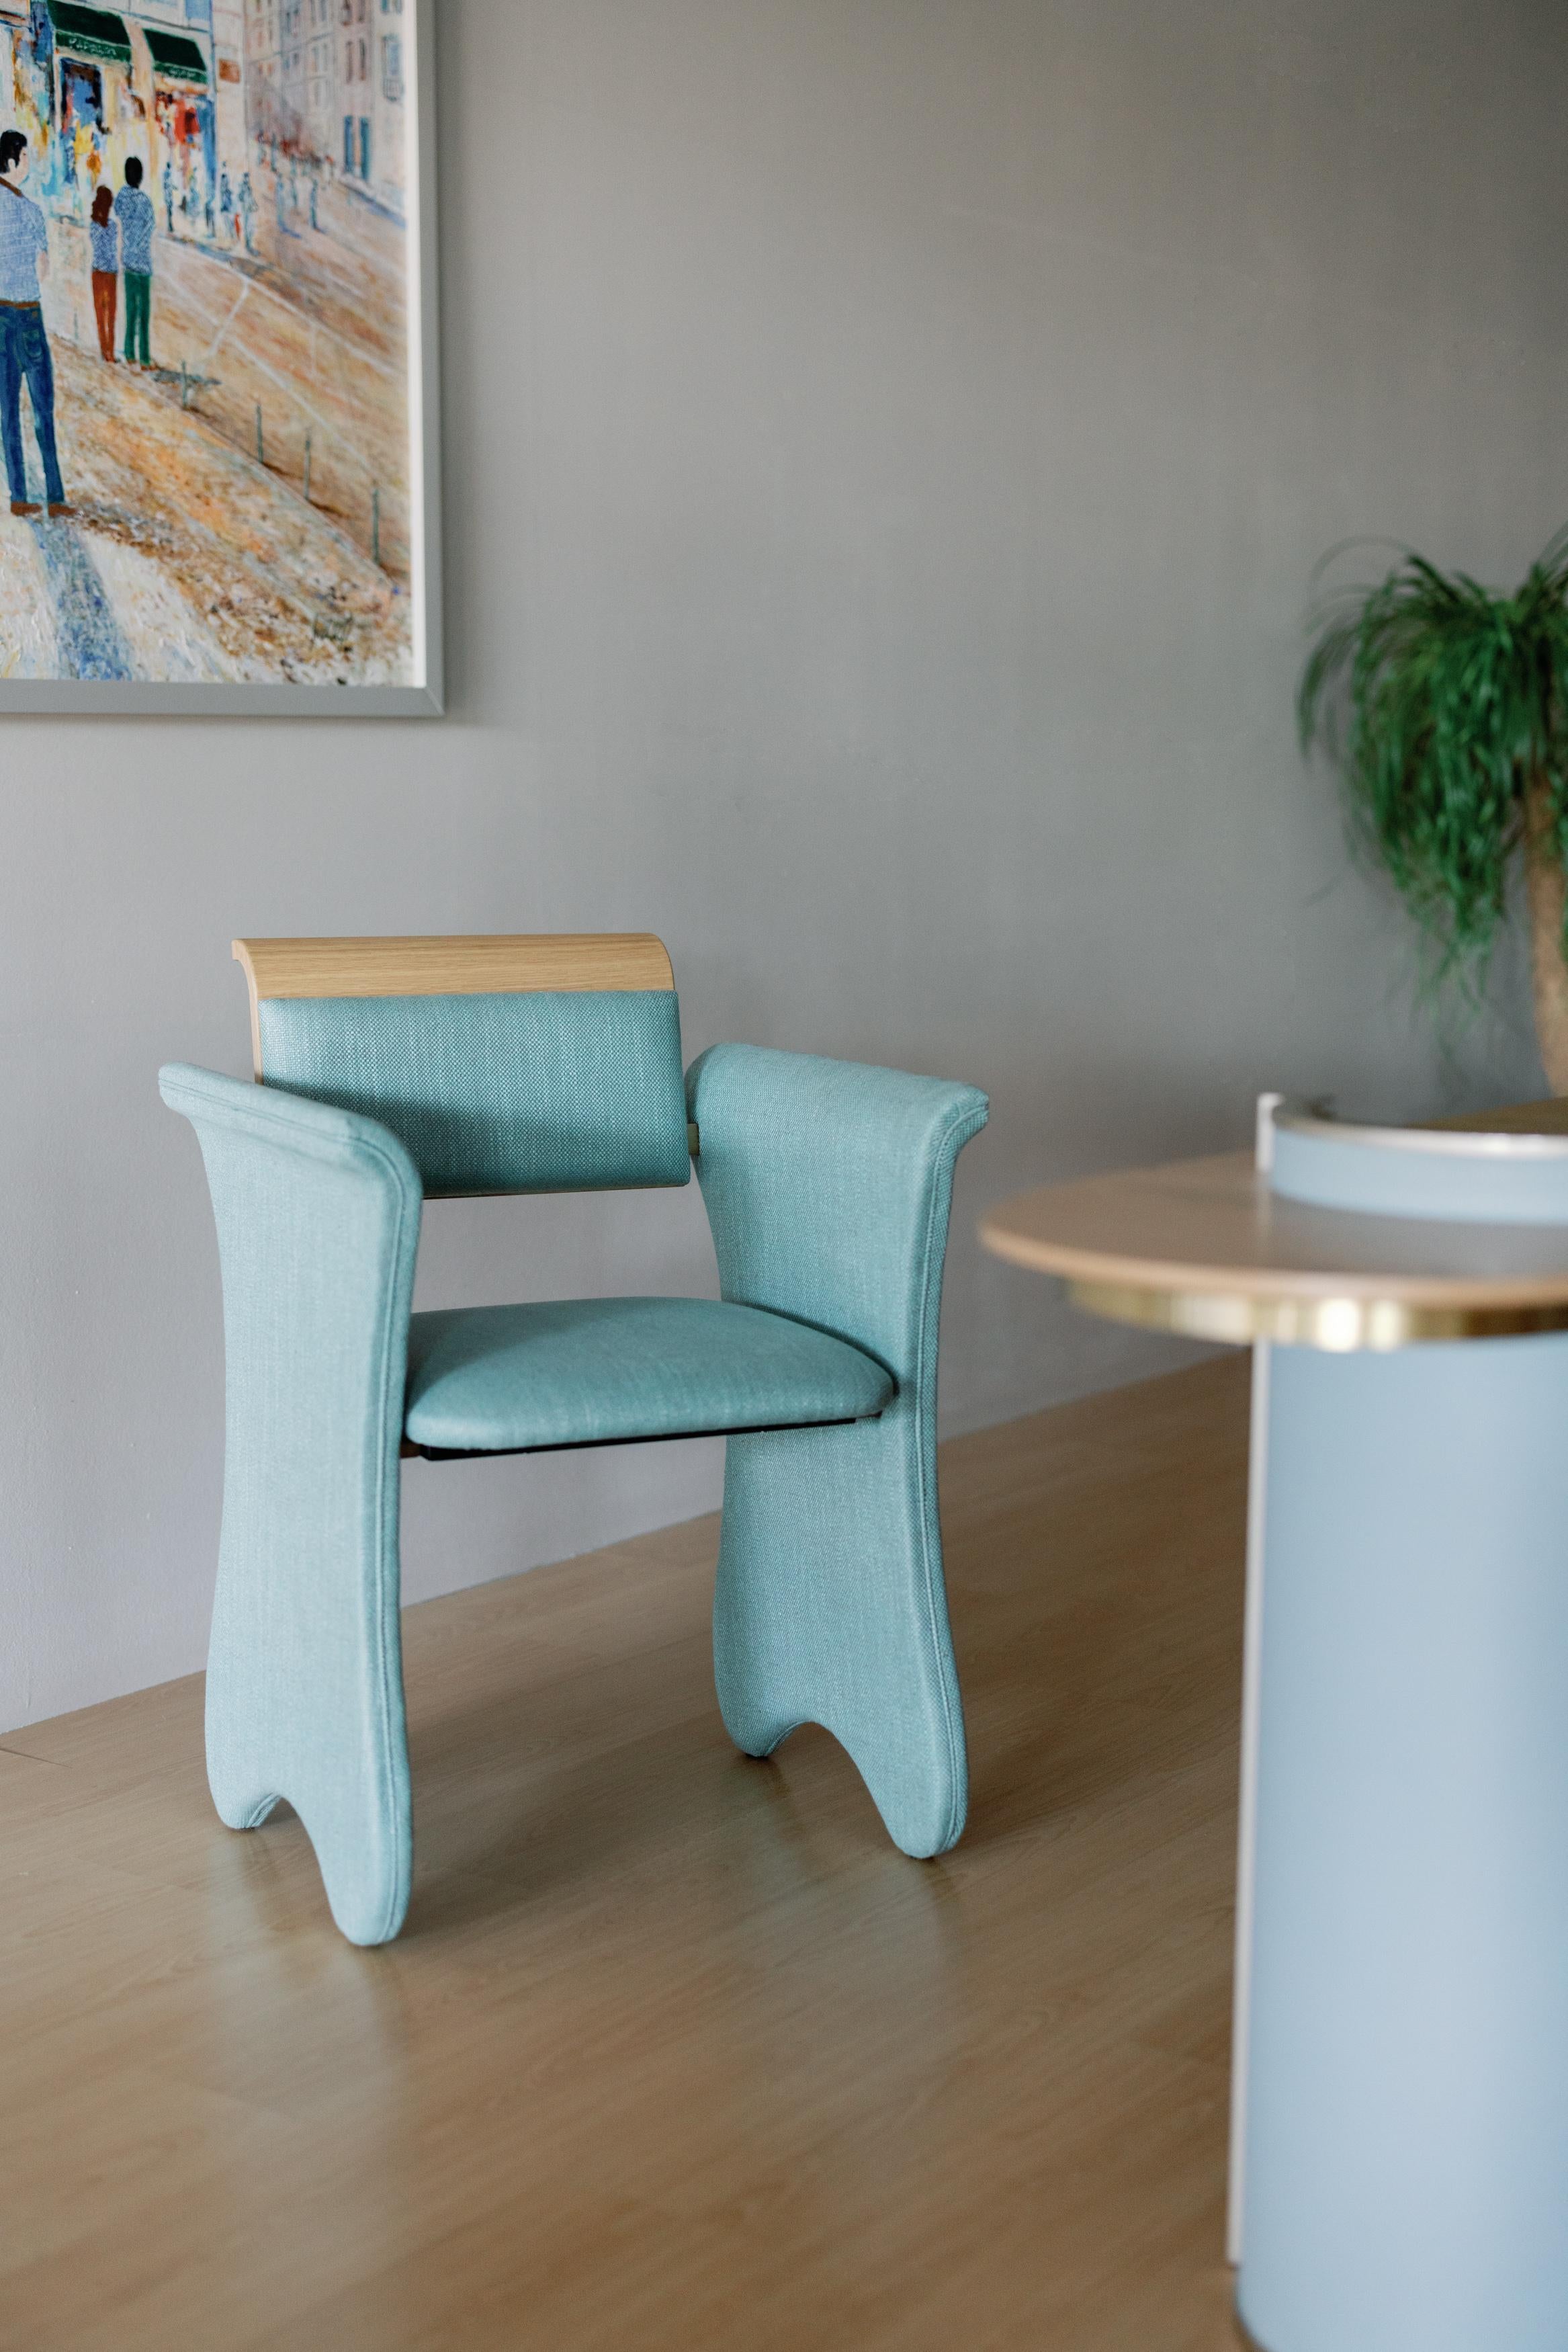 Greenapple Chair, Contemporary Collection, handgefertigt in Portugal - Europa von Greenapple.

Der Bouclé-Bürostuhl Timeless wurde so entworfen und gefertigt, dass er den Lauf der Zeit überdauert und ein Leben lang als Begleiter für Wachstum und